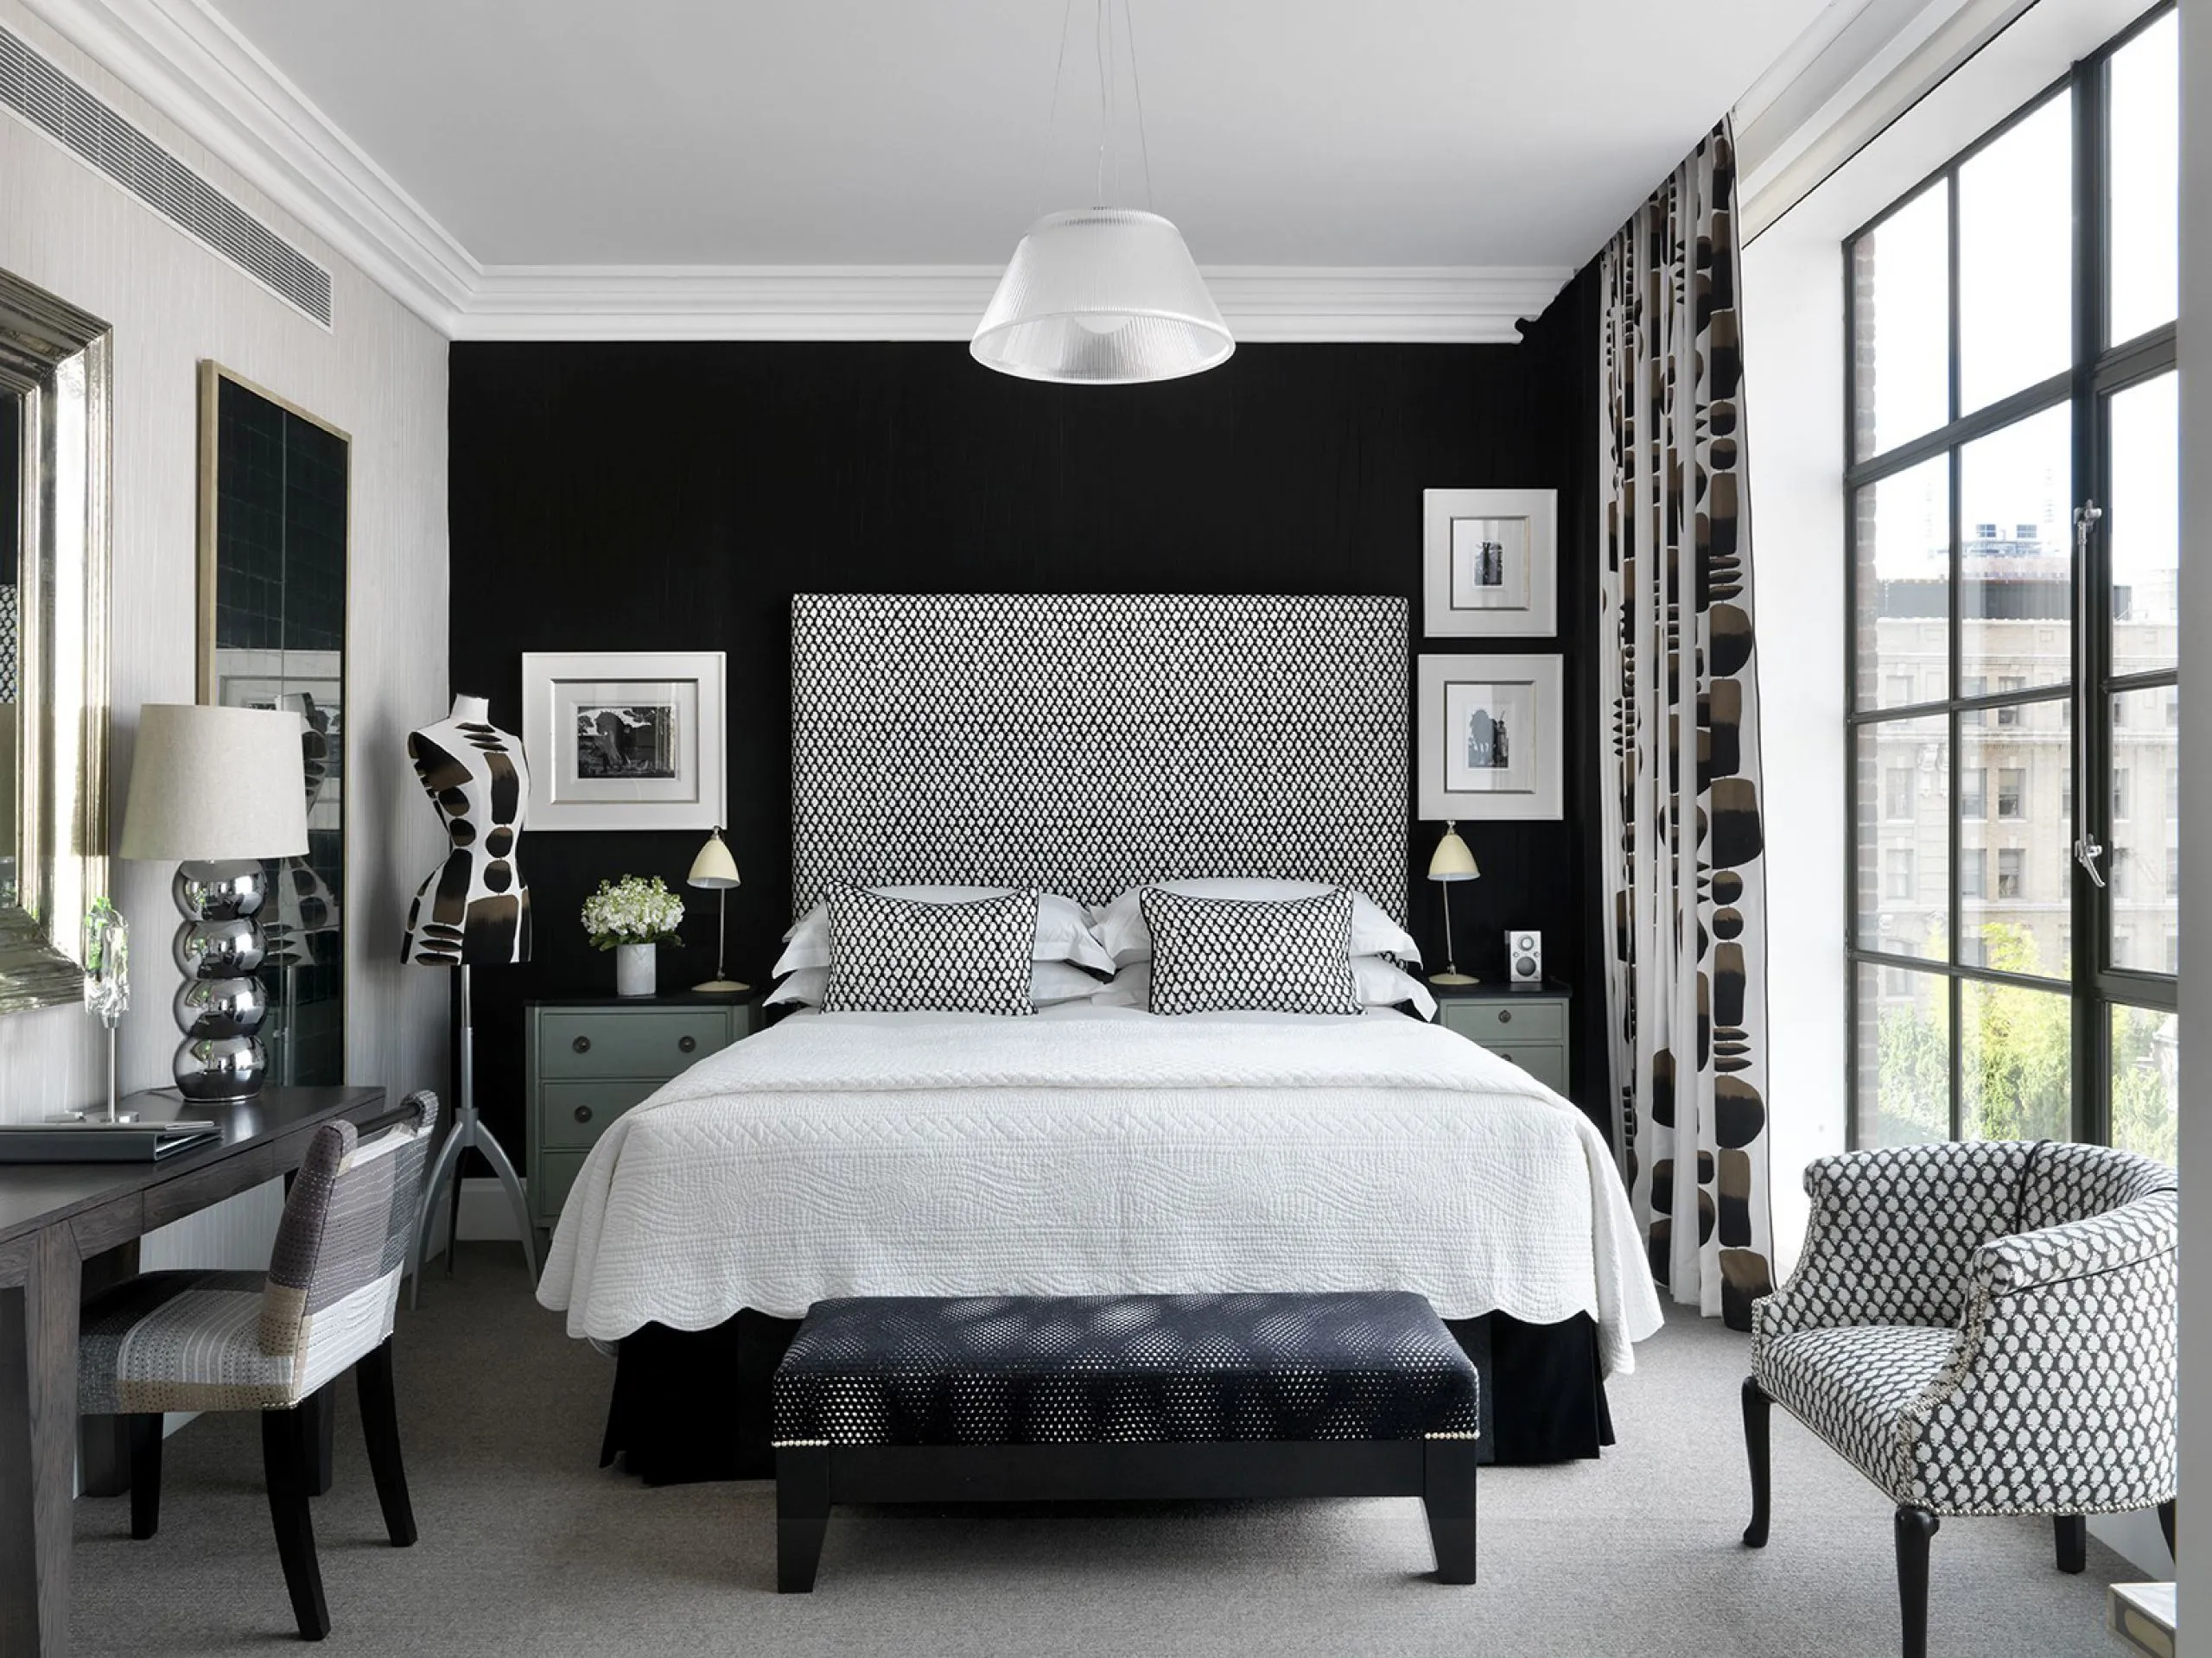 сочетание черной и белой мебели в интерьере спальни